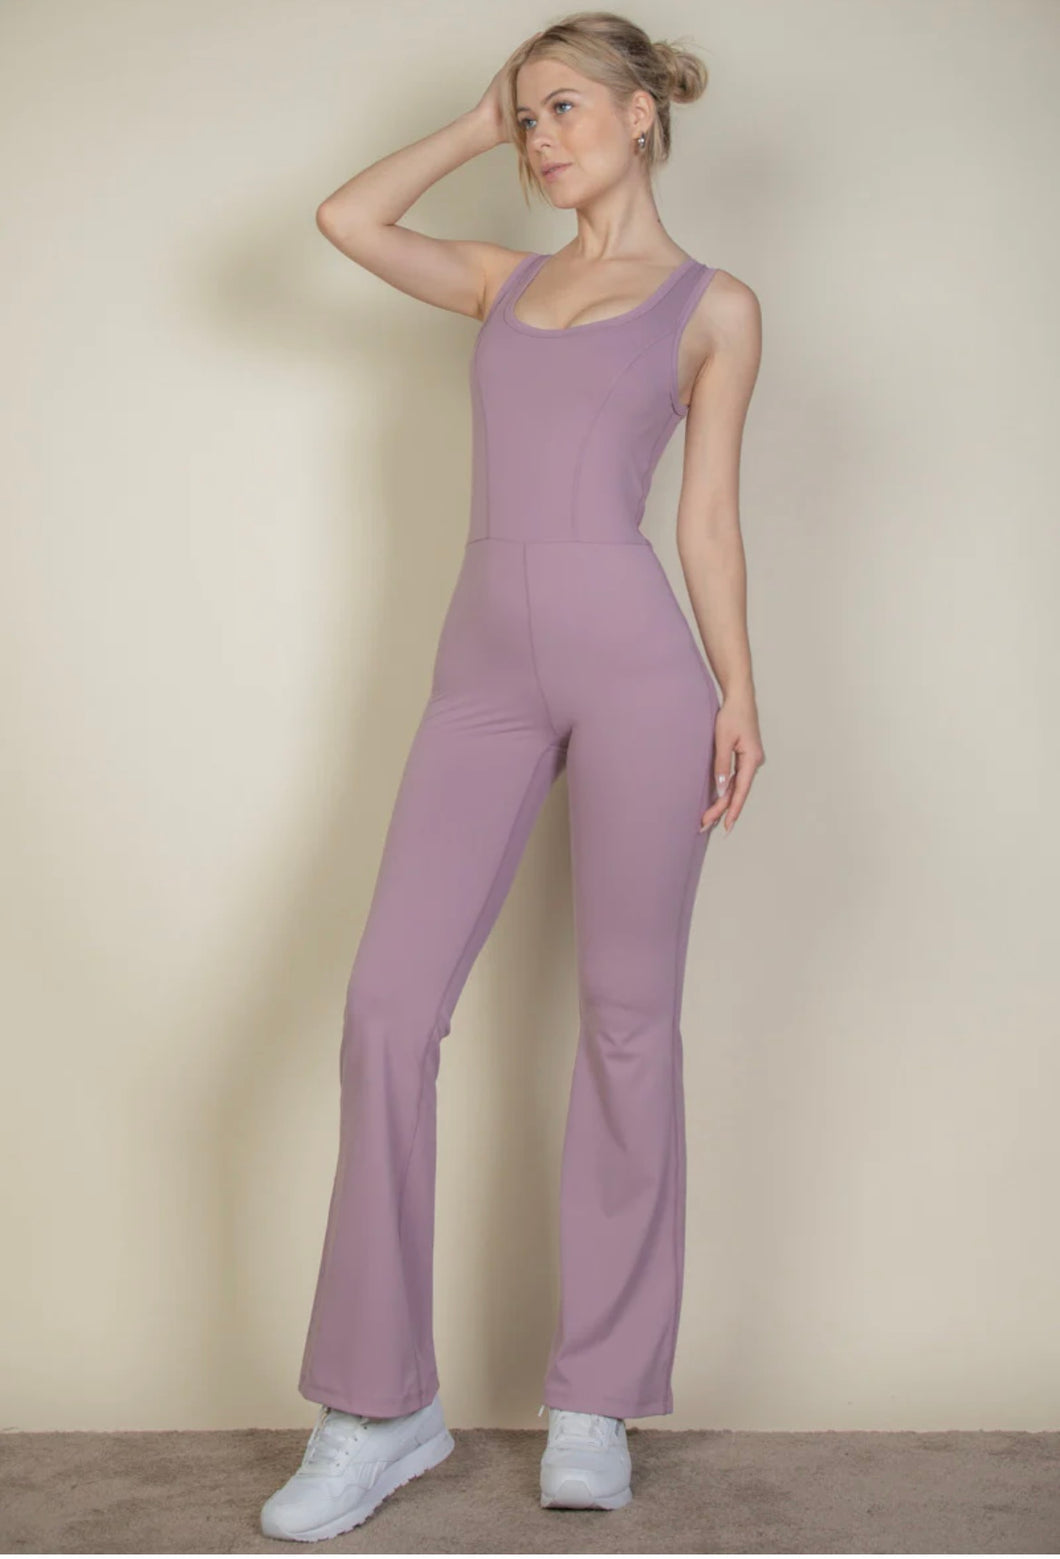 Activewear Jumpsuit - Lavender